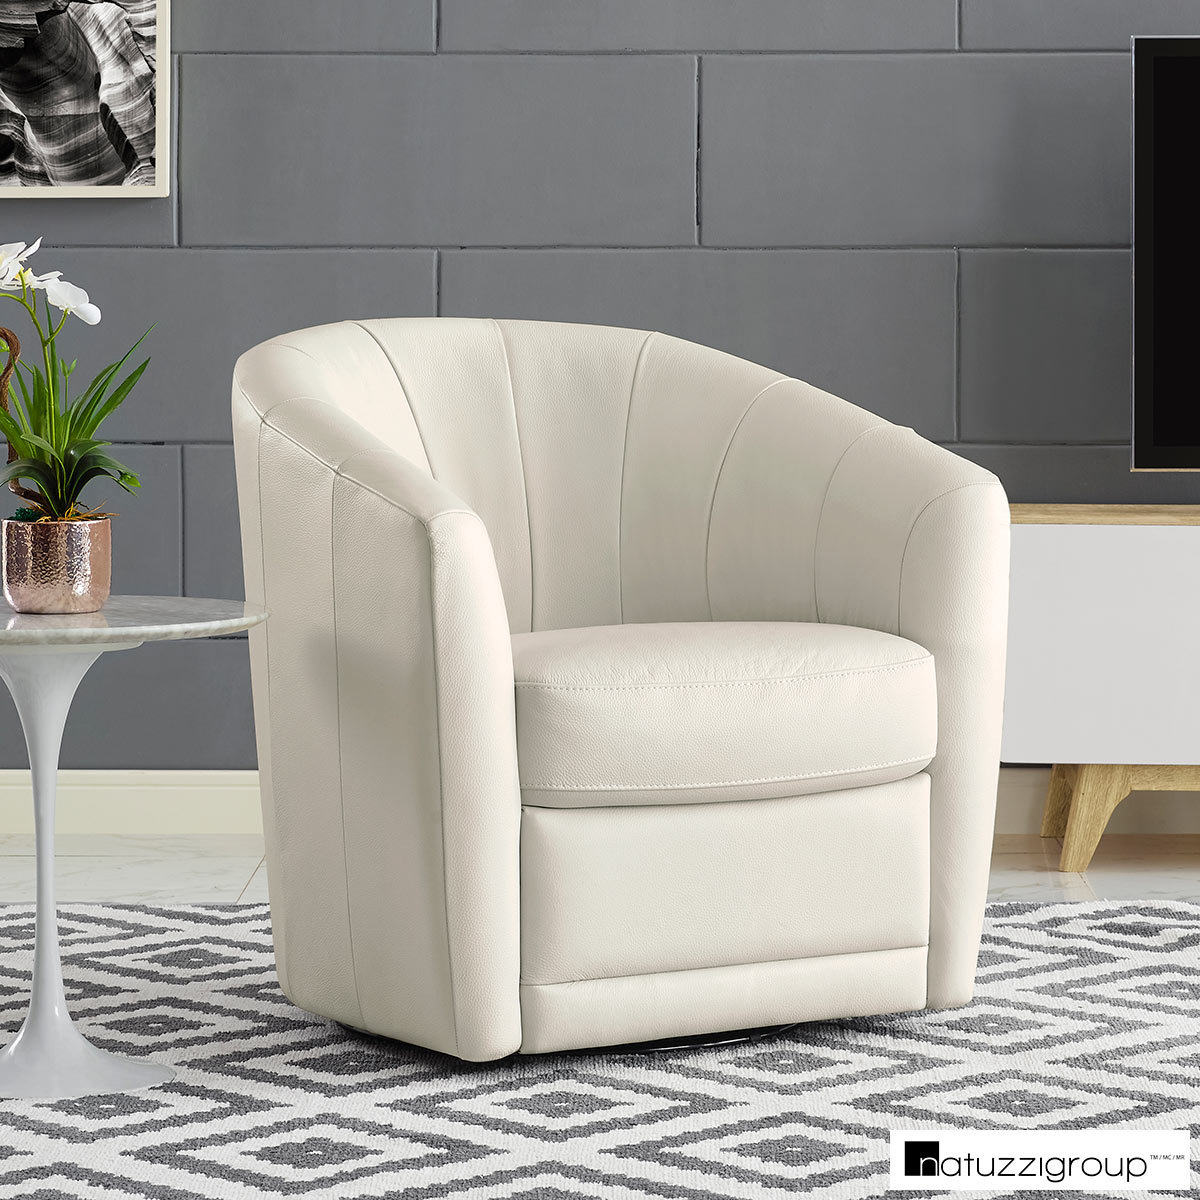 Natuzzi Cream Leather Swivel Accent Chair Costco Uk